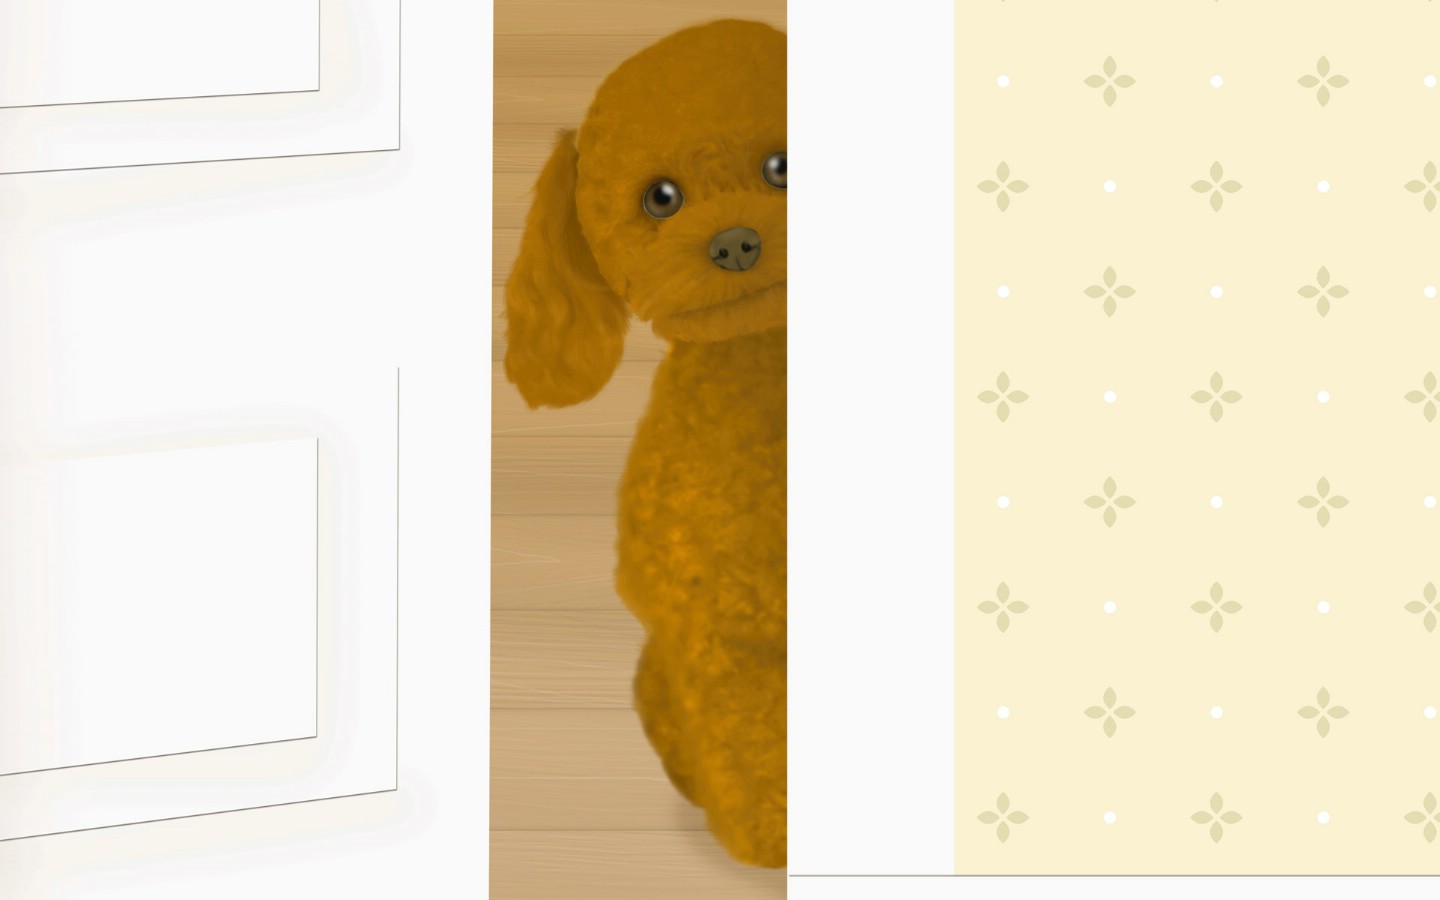 壁纸1440x900可爱小狗插画 壁纸40壁纸 可爱小狗插画壁纸 可爱小狗插画图片 可爱小狗插画素材 系统壁纸 系统图库 系统图片素材桌面壁纸